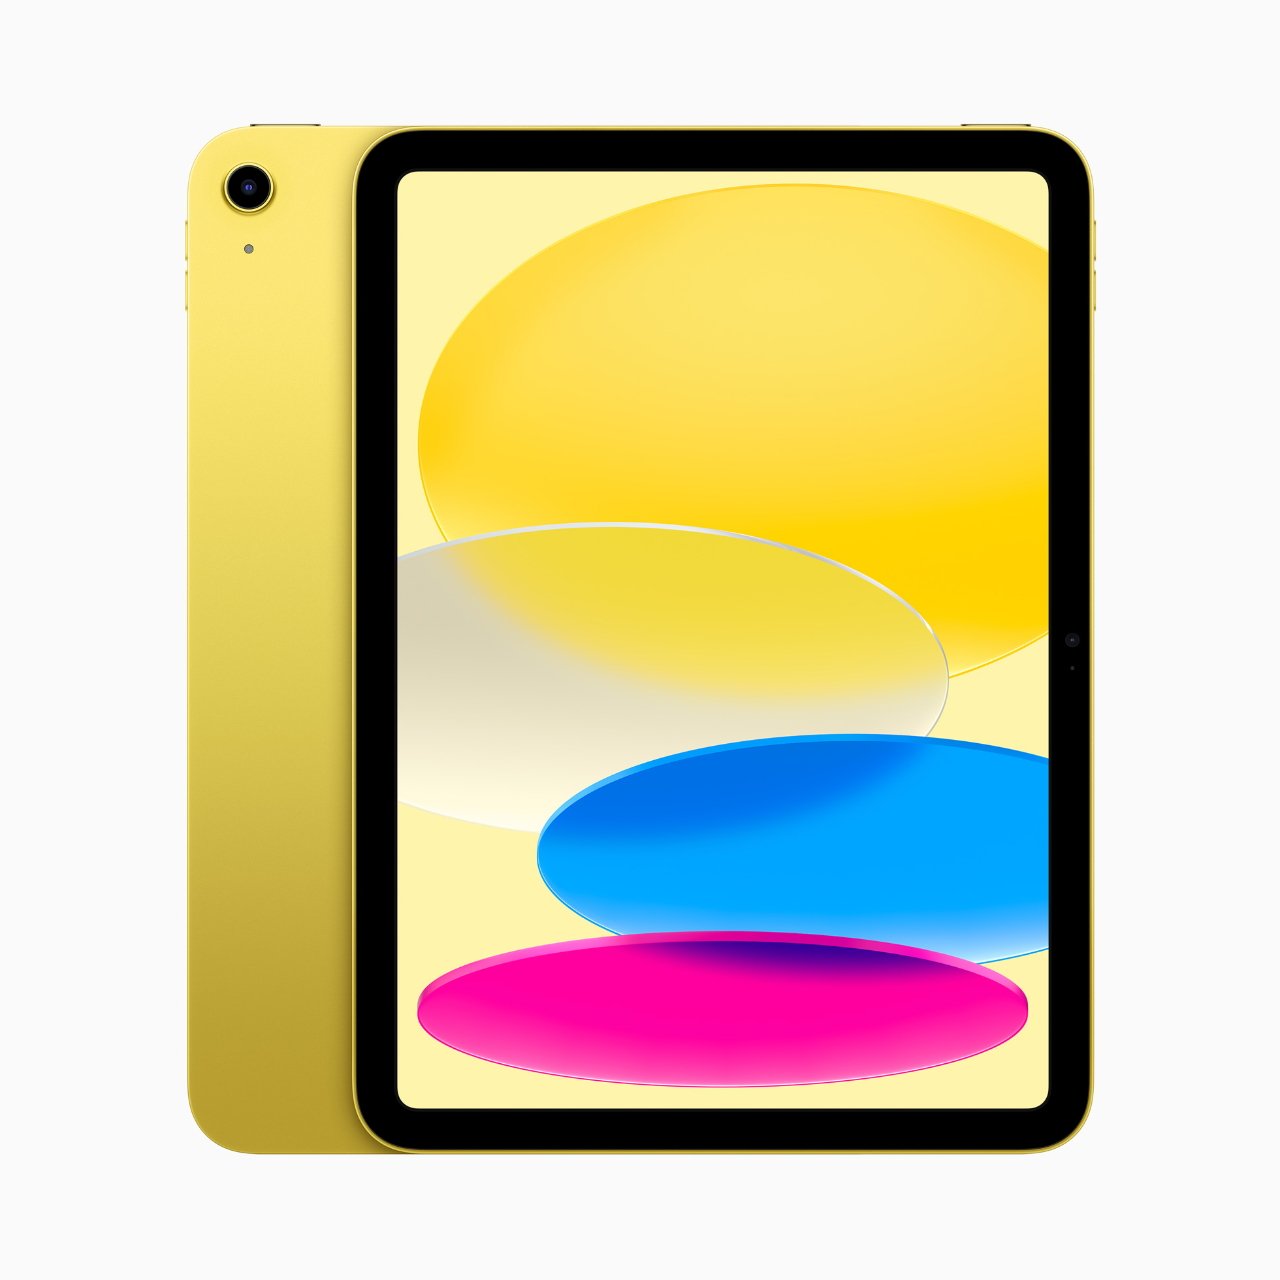 Новый iPad можно купить в желтом цвете.  Он очень желтый.